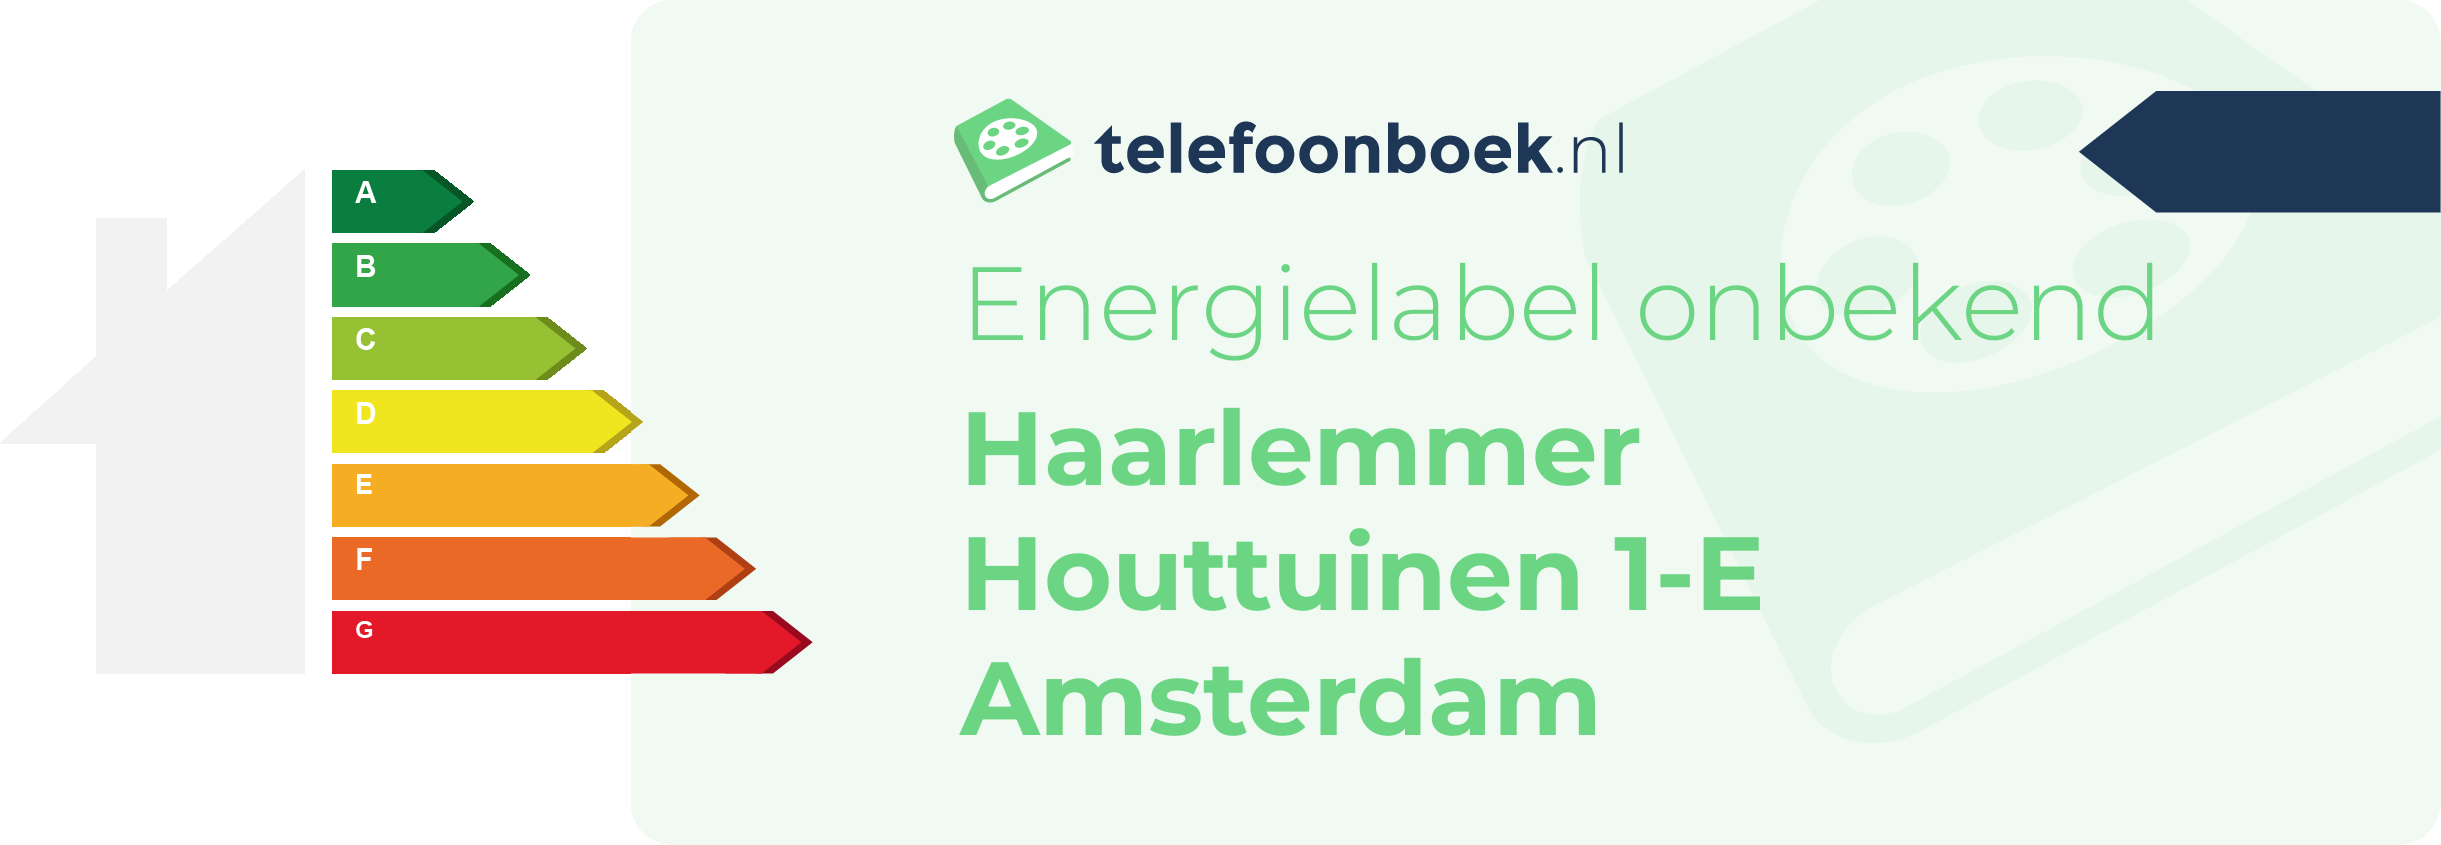 Energielabel Haarlemmer Houttuinen 1-E Amsterdam